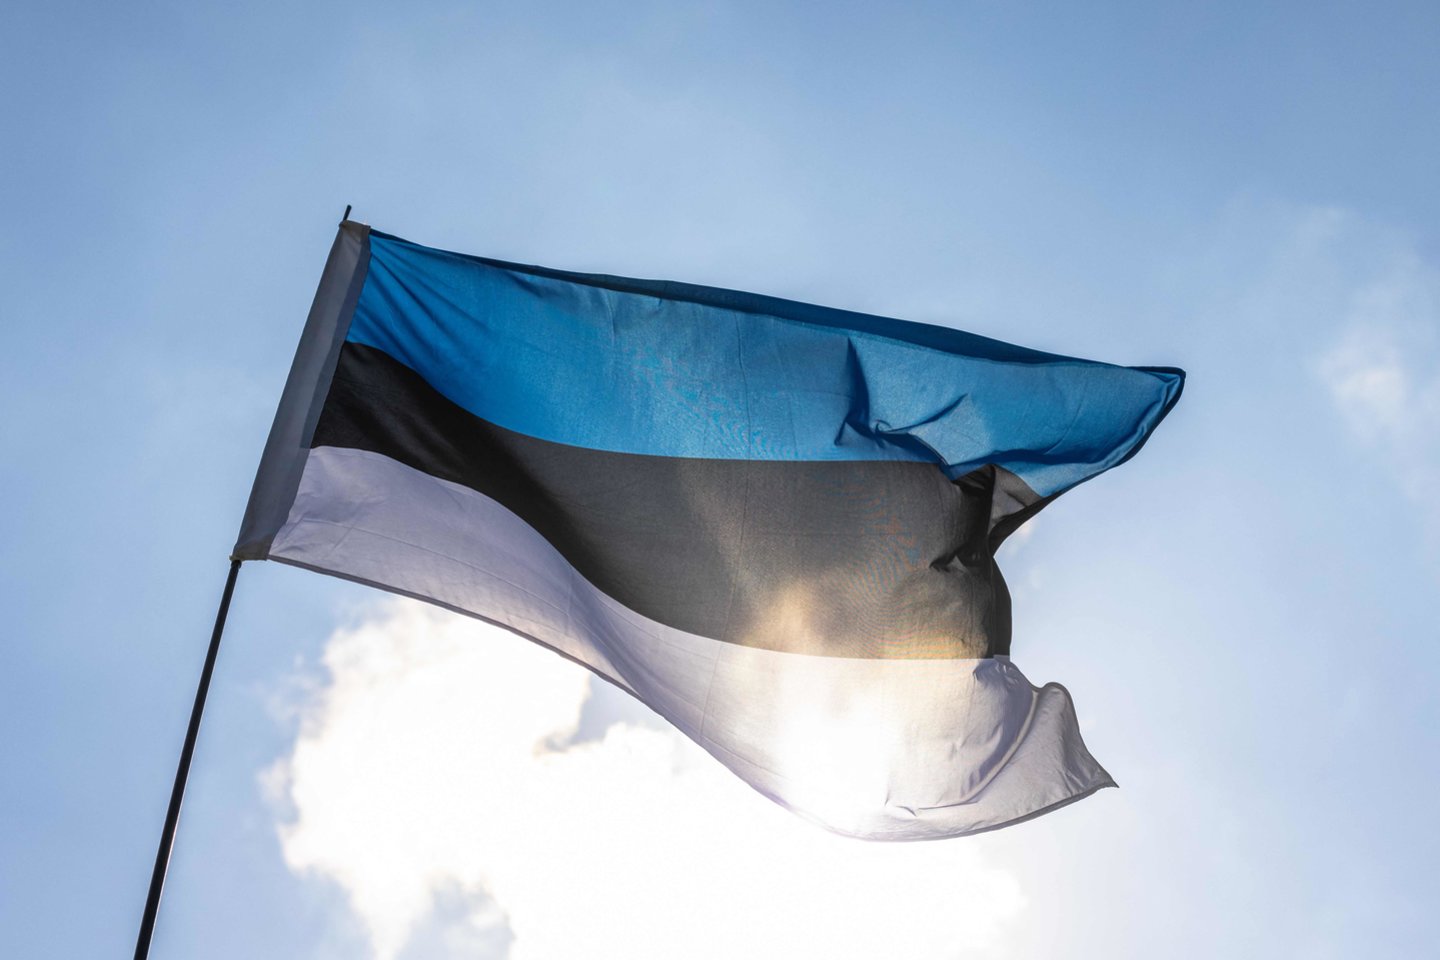  Estijos valdančioji Centro partija renka parašus dėl tiesioginių prezidento rinkimų.  <br>AFP/Scanpix nuotr.